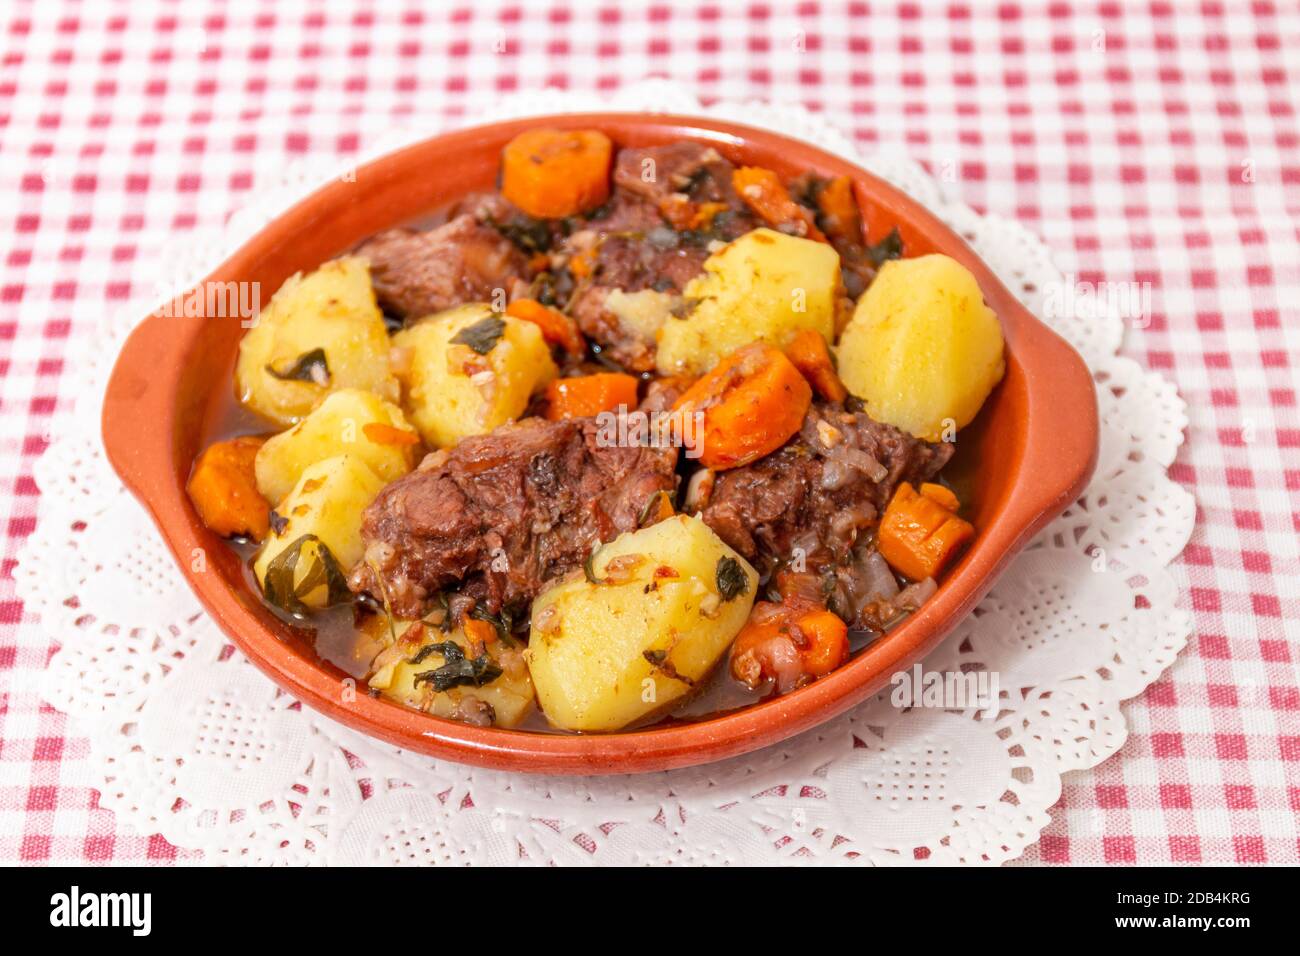 Repas rustique traditionnel de queue de bœuf avec pomme de terre et carotte de la région de l'Alentejo, Portugal. Banque D'Images